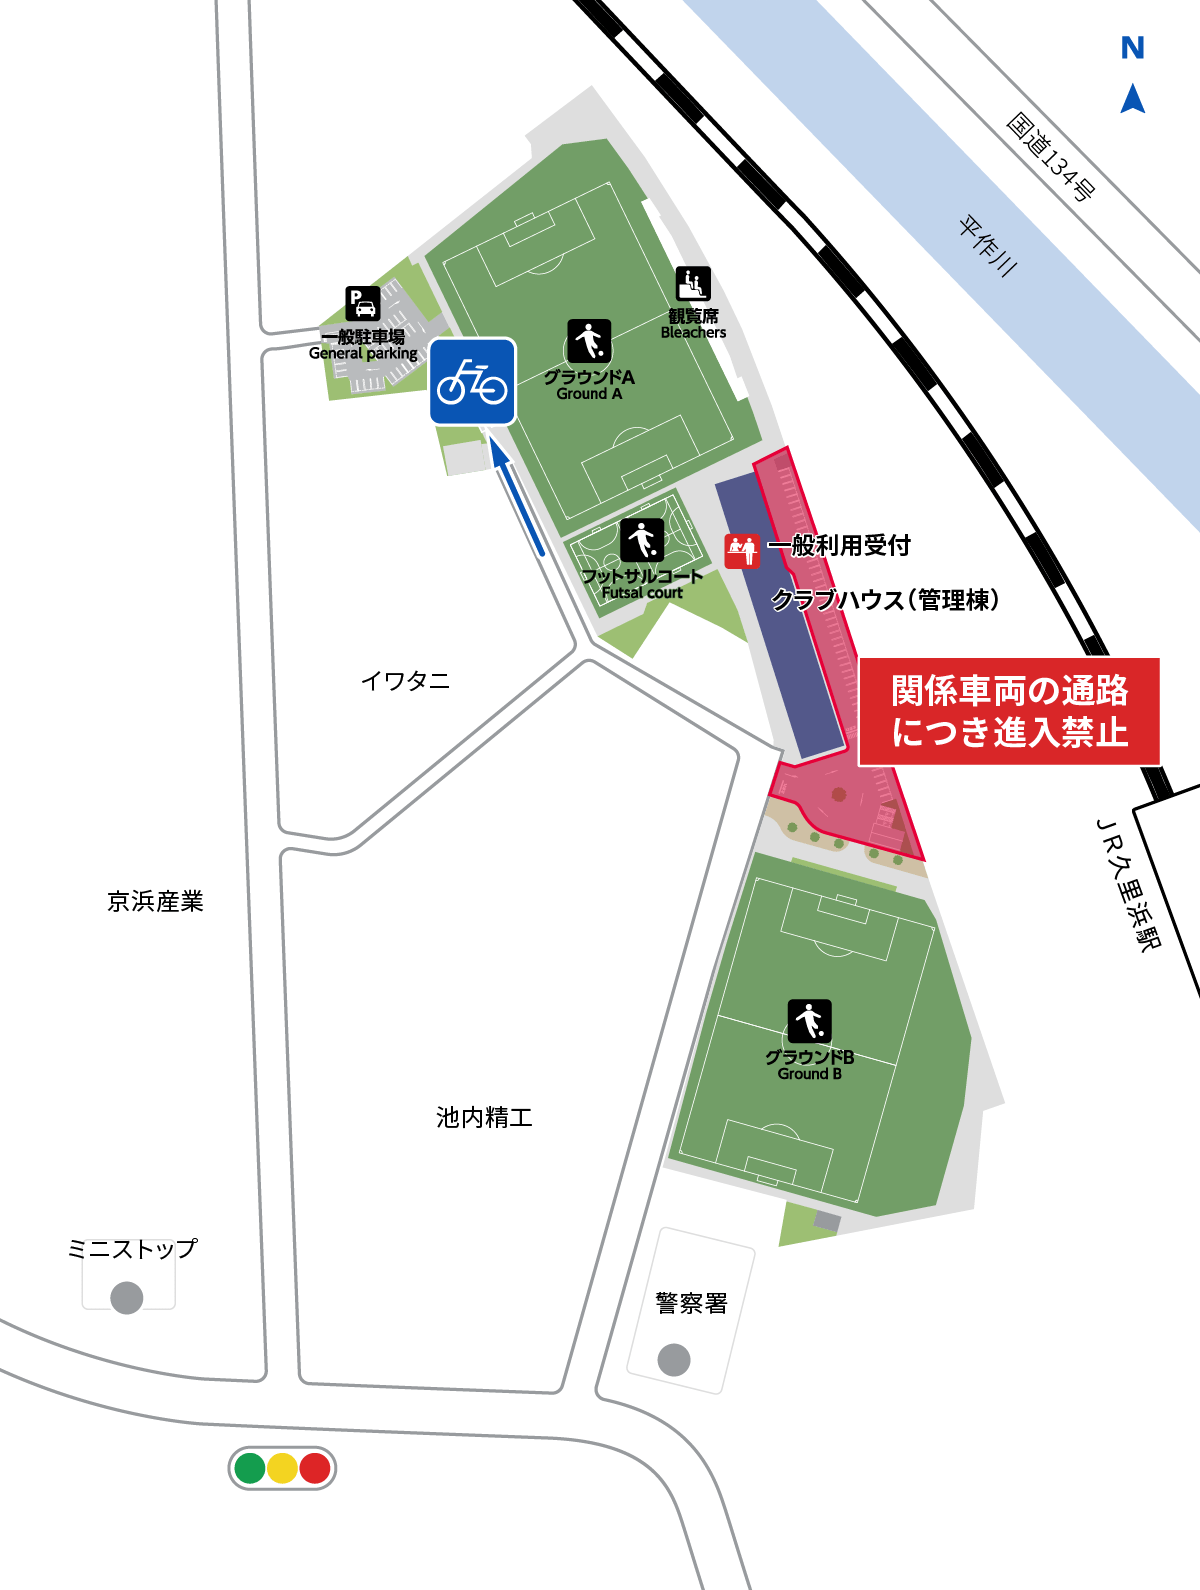 駐輪場の場所と入口の地図